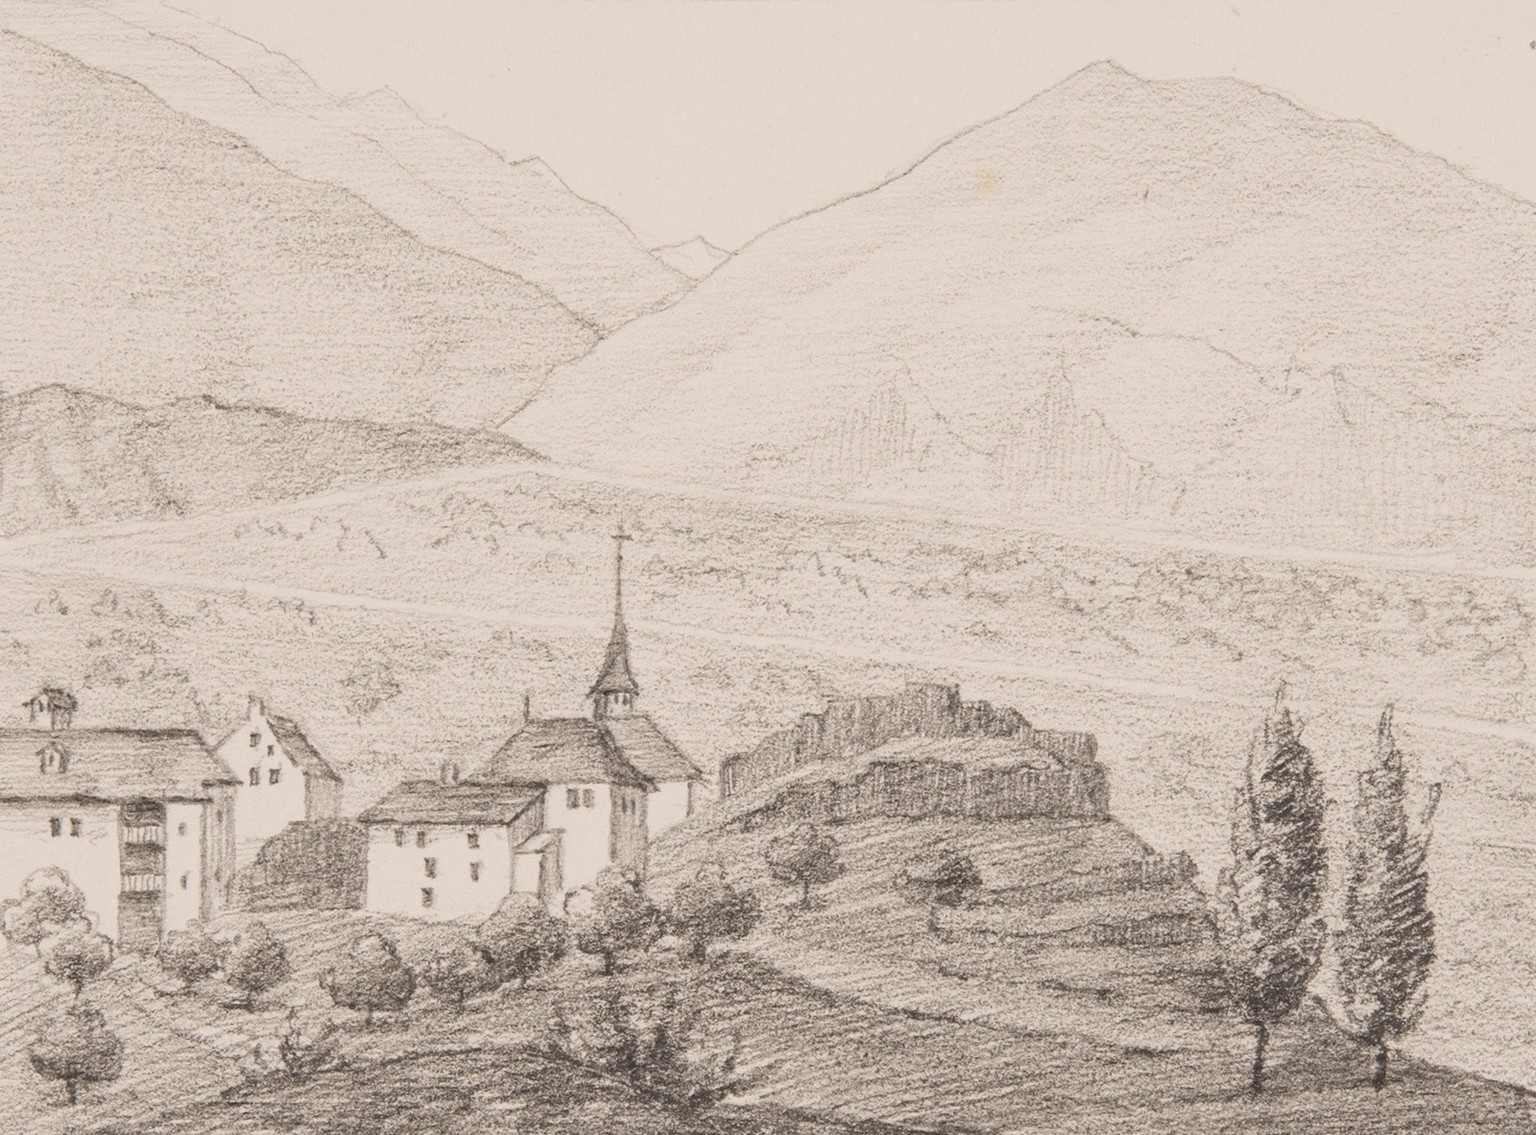 Das nach der Schlacht auf der Planta von den Wallisern besetzte Conthey in einer Handzeichnung von 1868. Im Vordergrund die Ruine, des 1475 zerstörten Schlosses der Grafen von Savoyen.
https://permali ...